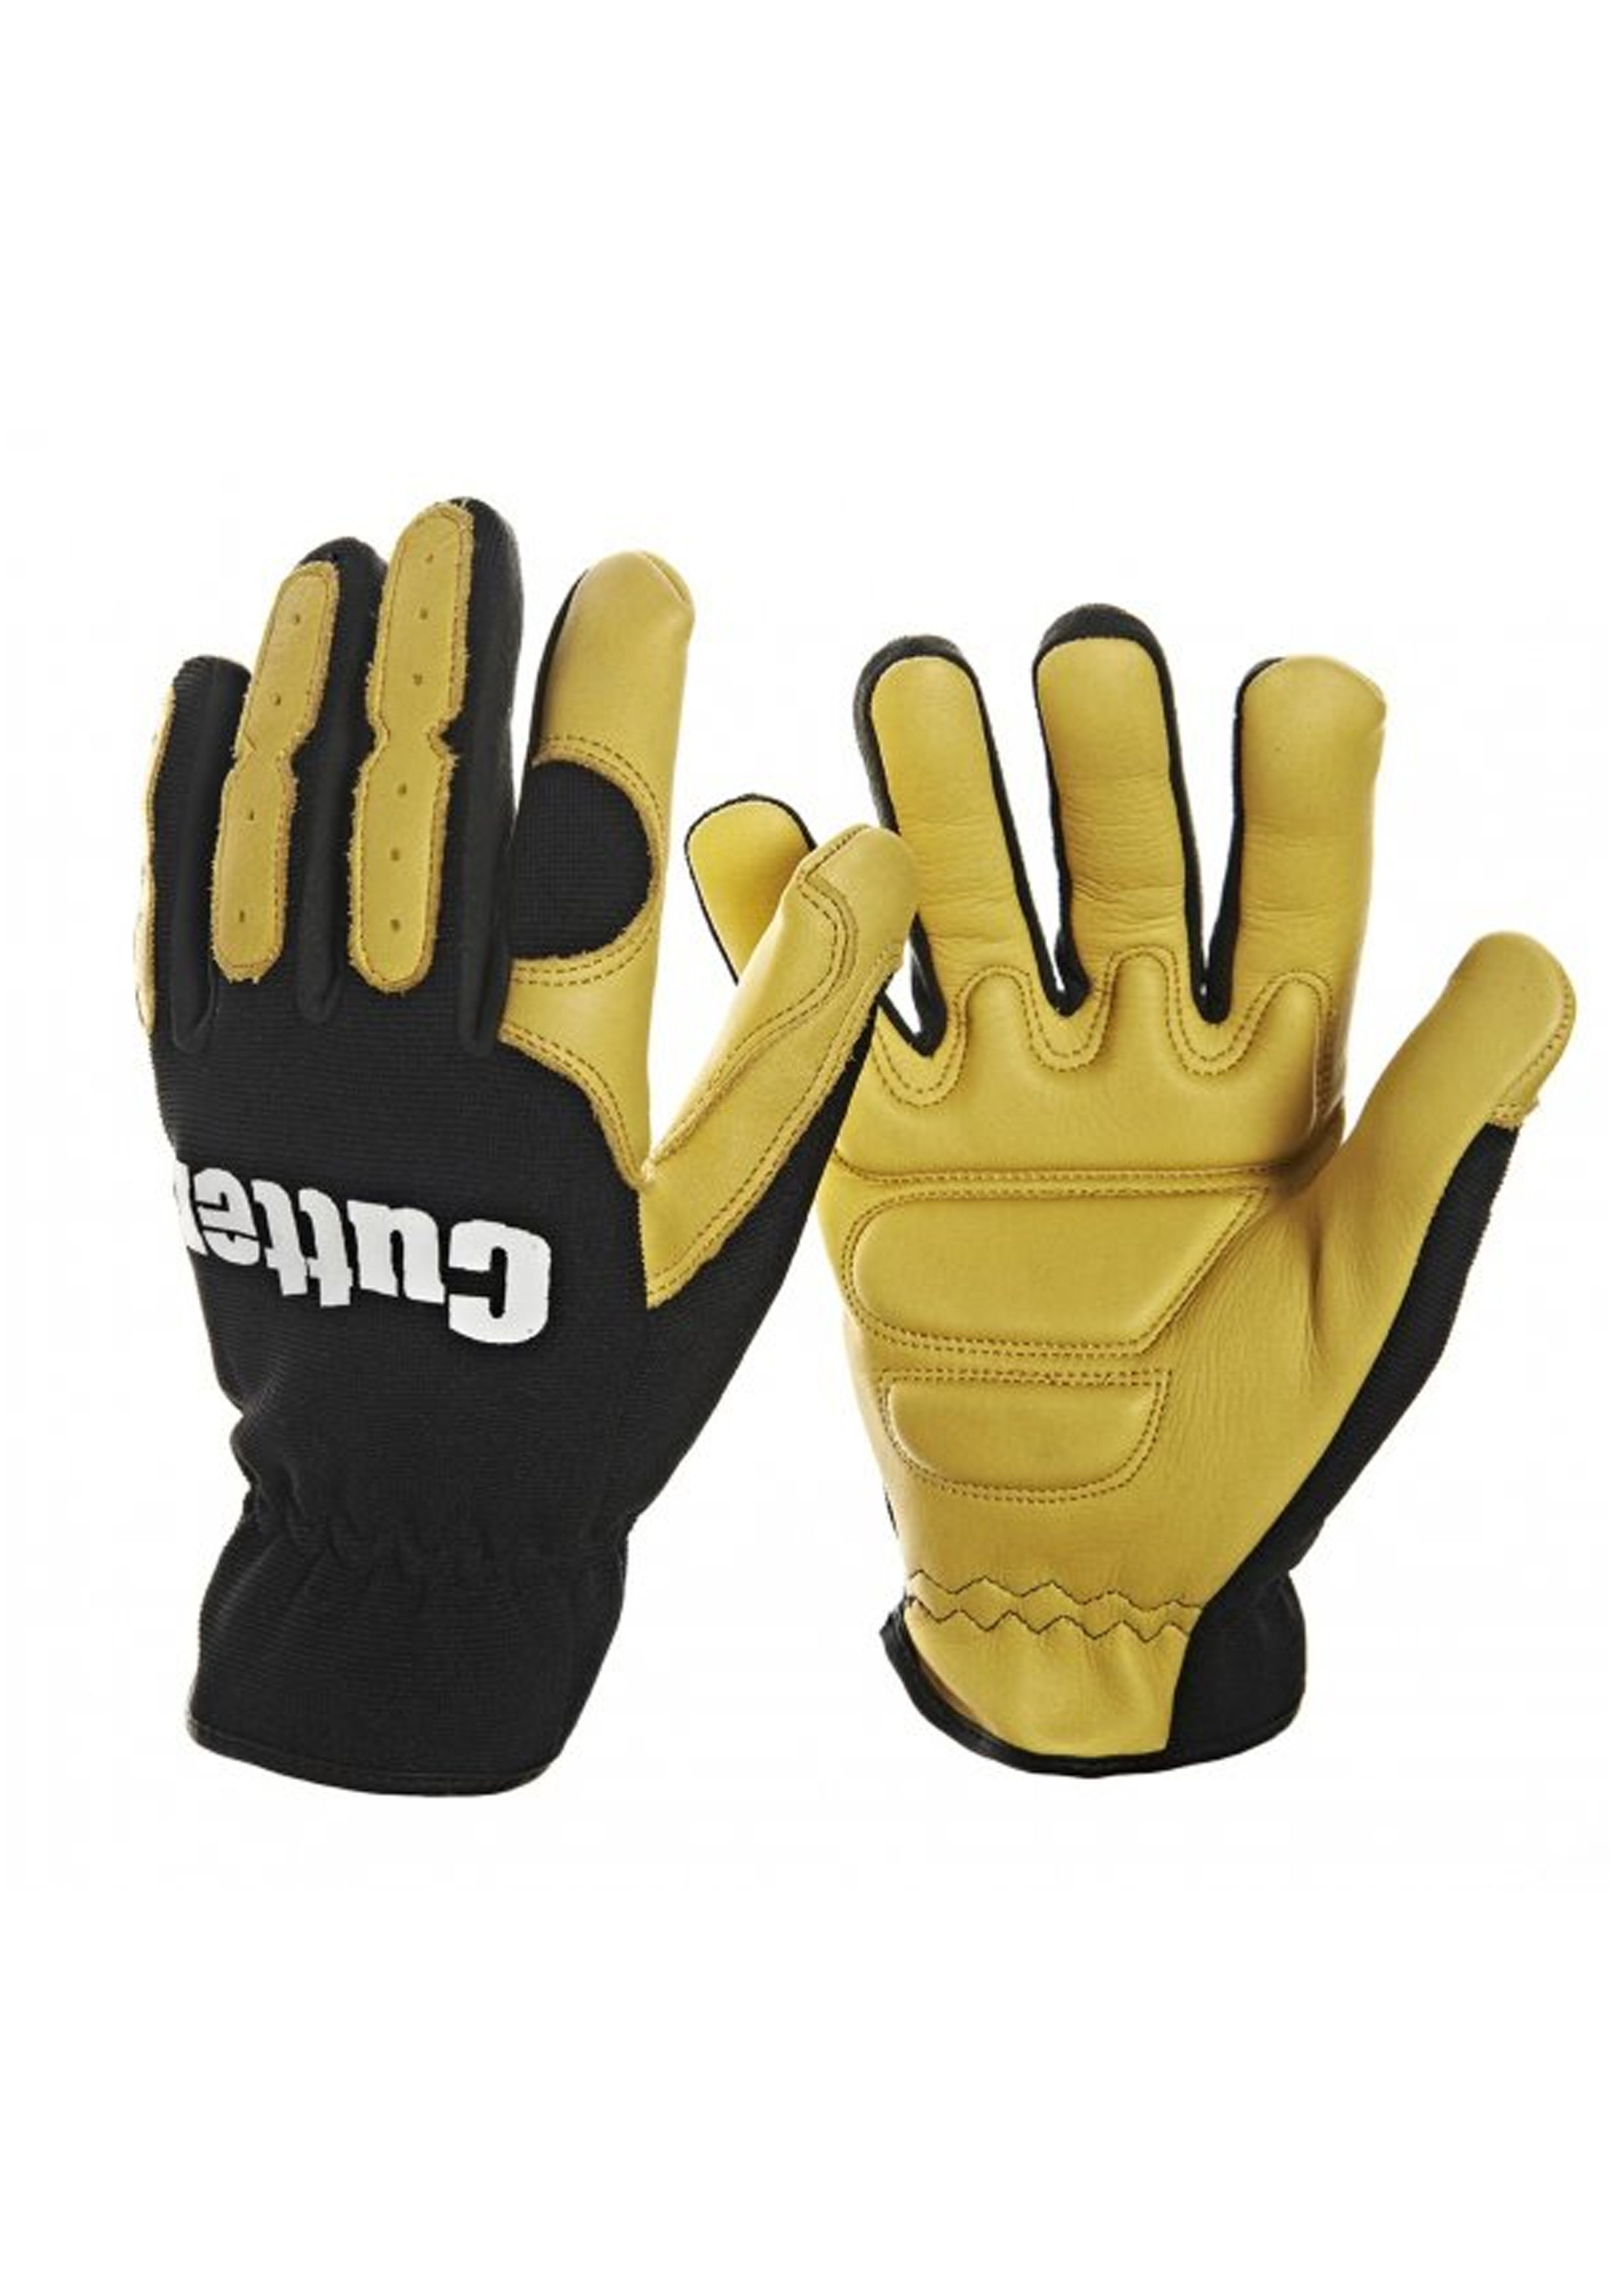 Strimmer & Trimmer Glove Medium (CW700)